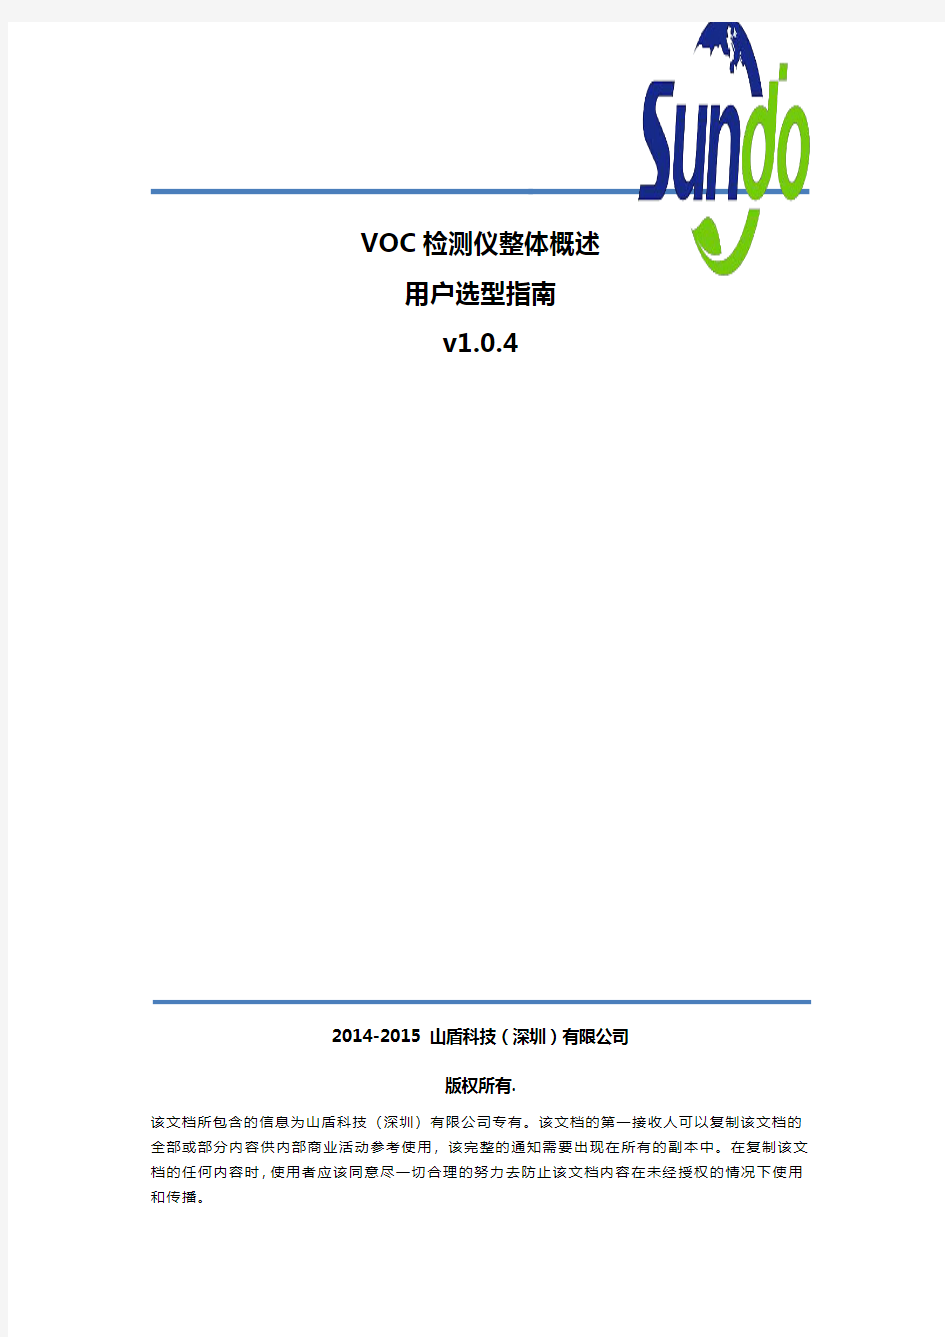 VOC气体检测仪-山盾科技